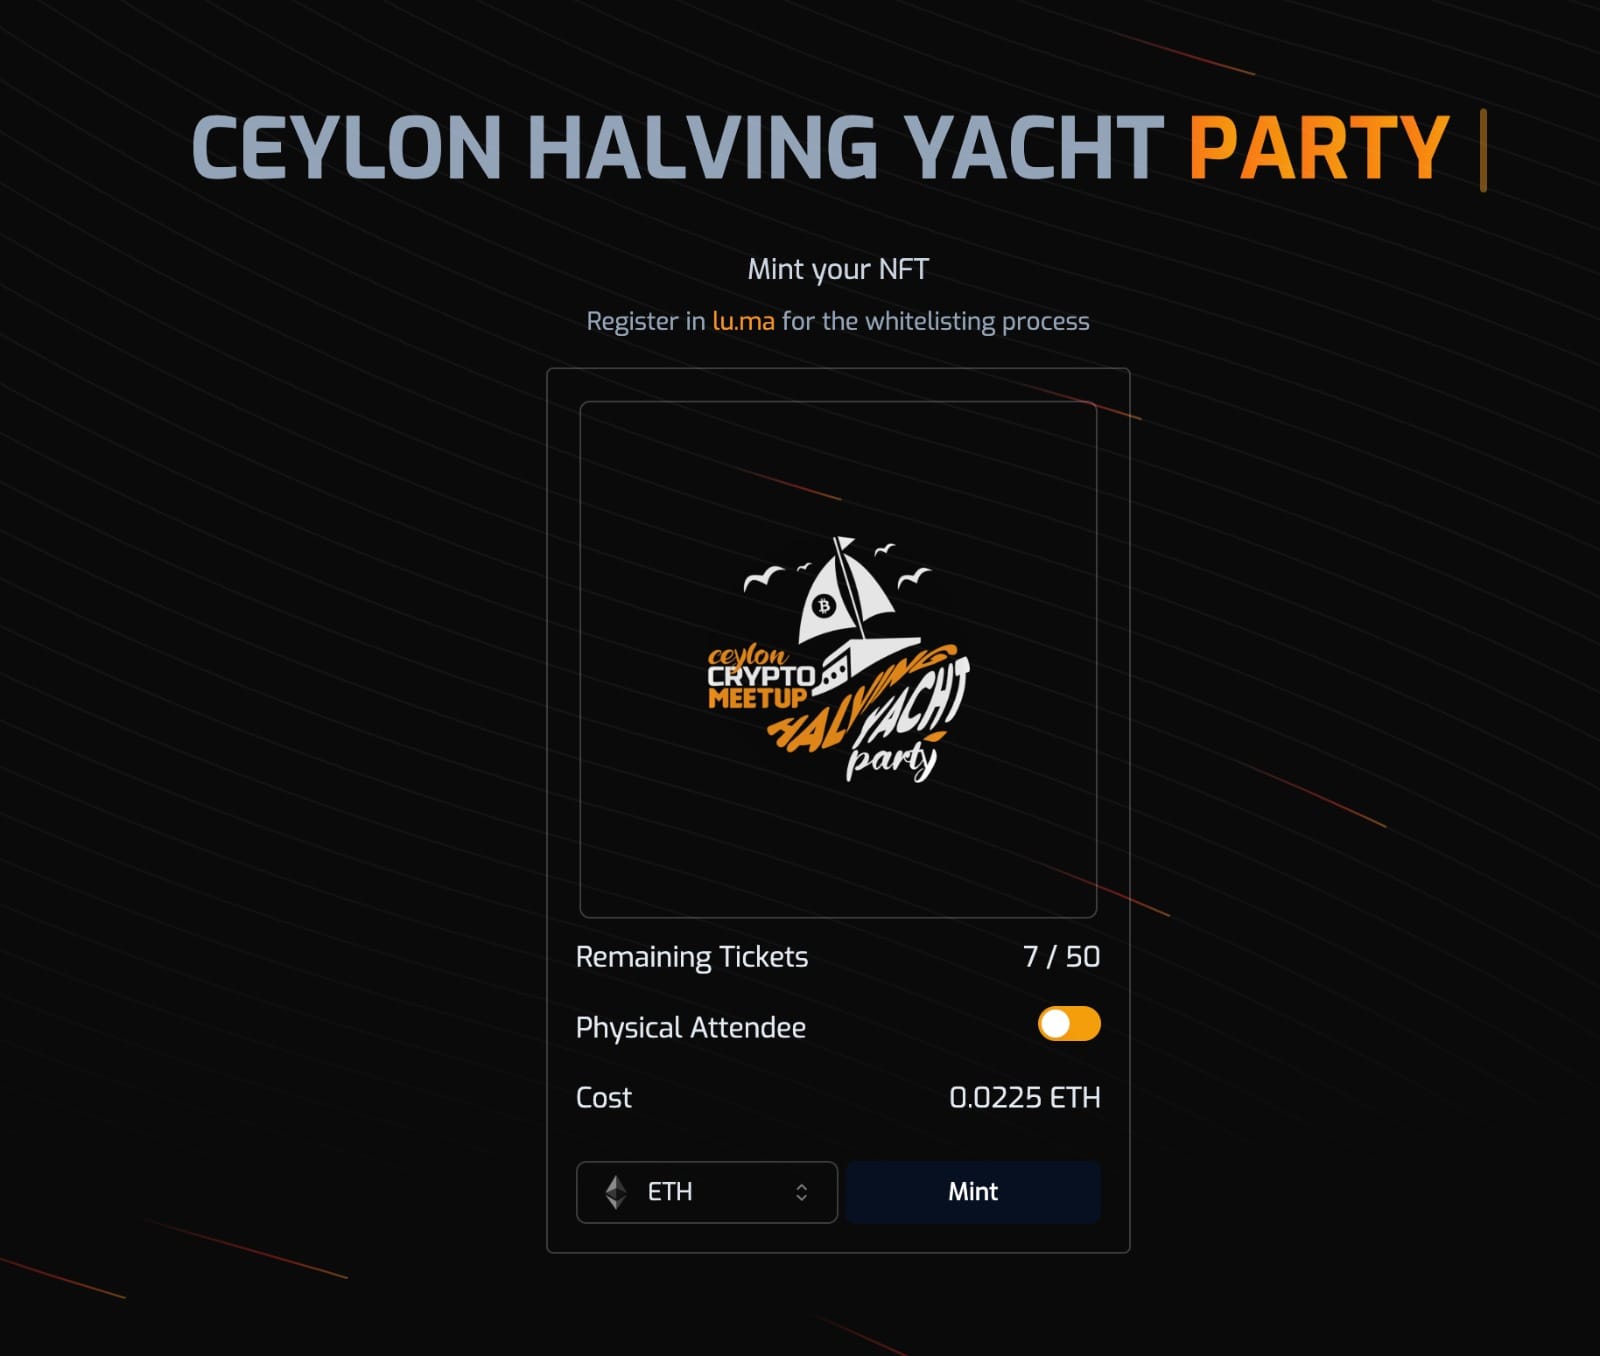 ශ්‍රී ලංකාවෙ ප්‍රථම වරට CeylonCash විසින් සංවිධානය කරන Halving Yacht Party එක පිළිබඳව දැන ගනි​මු